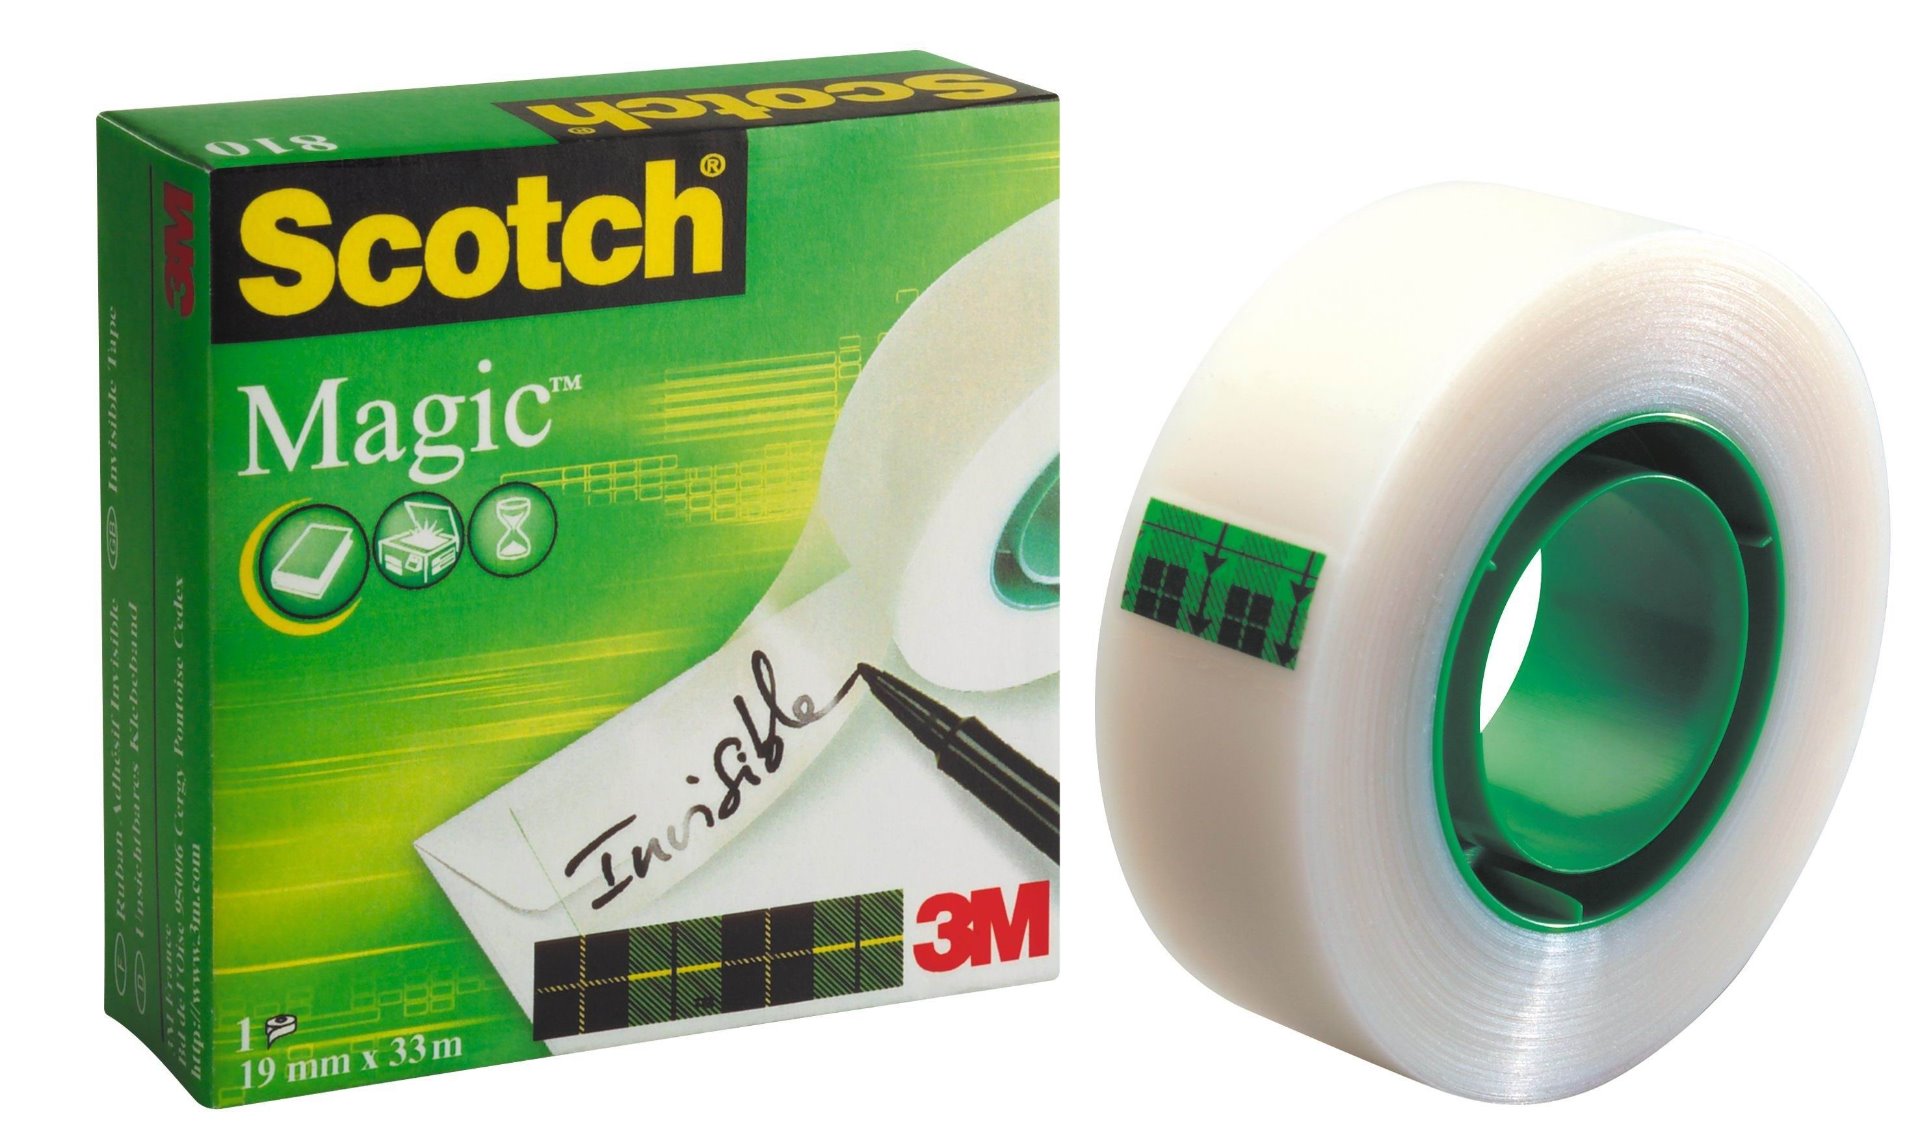 Scotch® Magic™ 810 Tape Value Pack